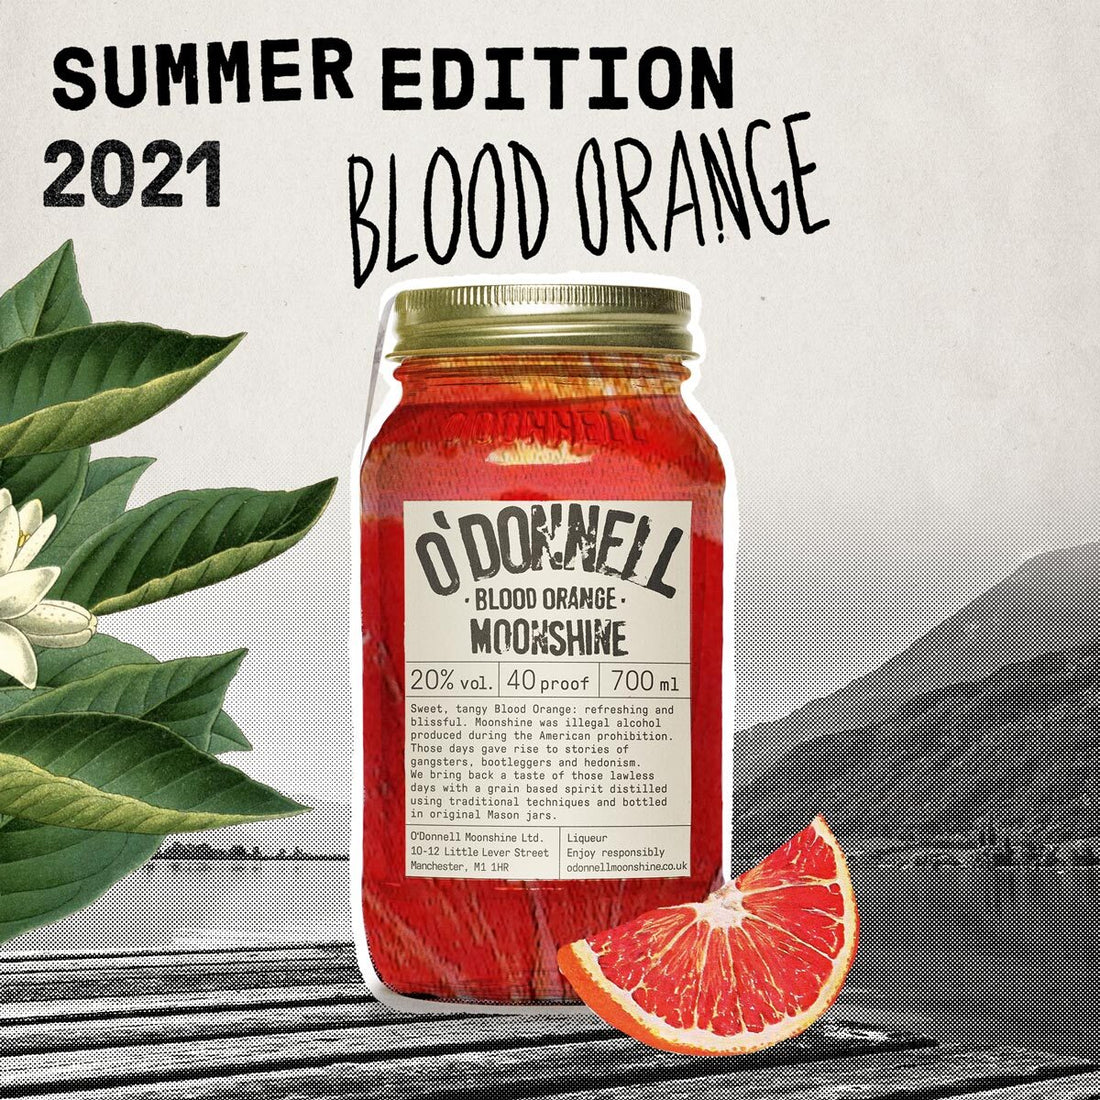 O Donnell Moonshine Blood Orange